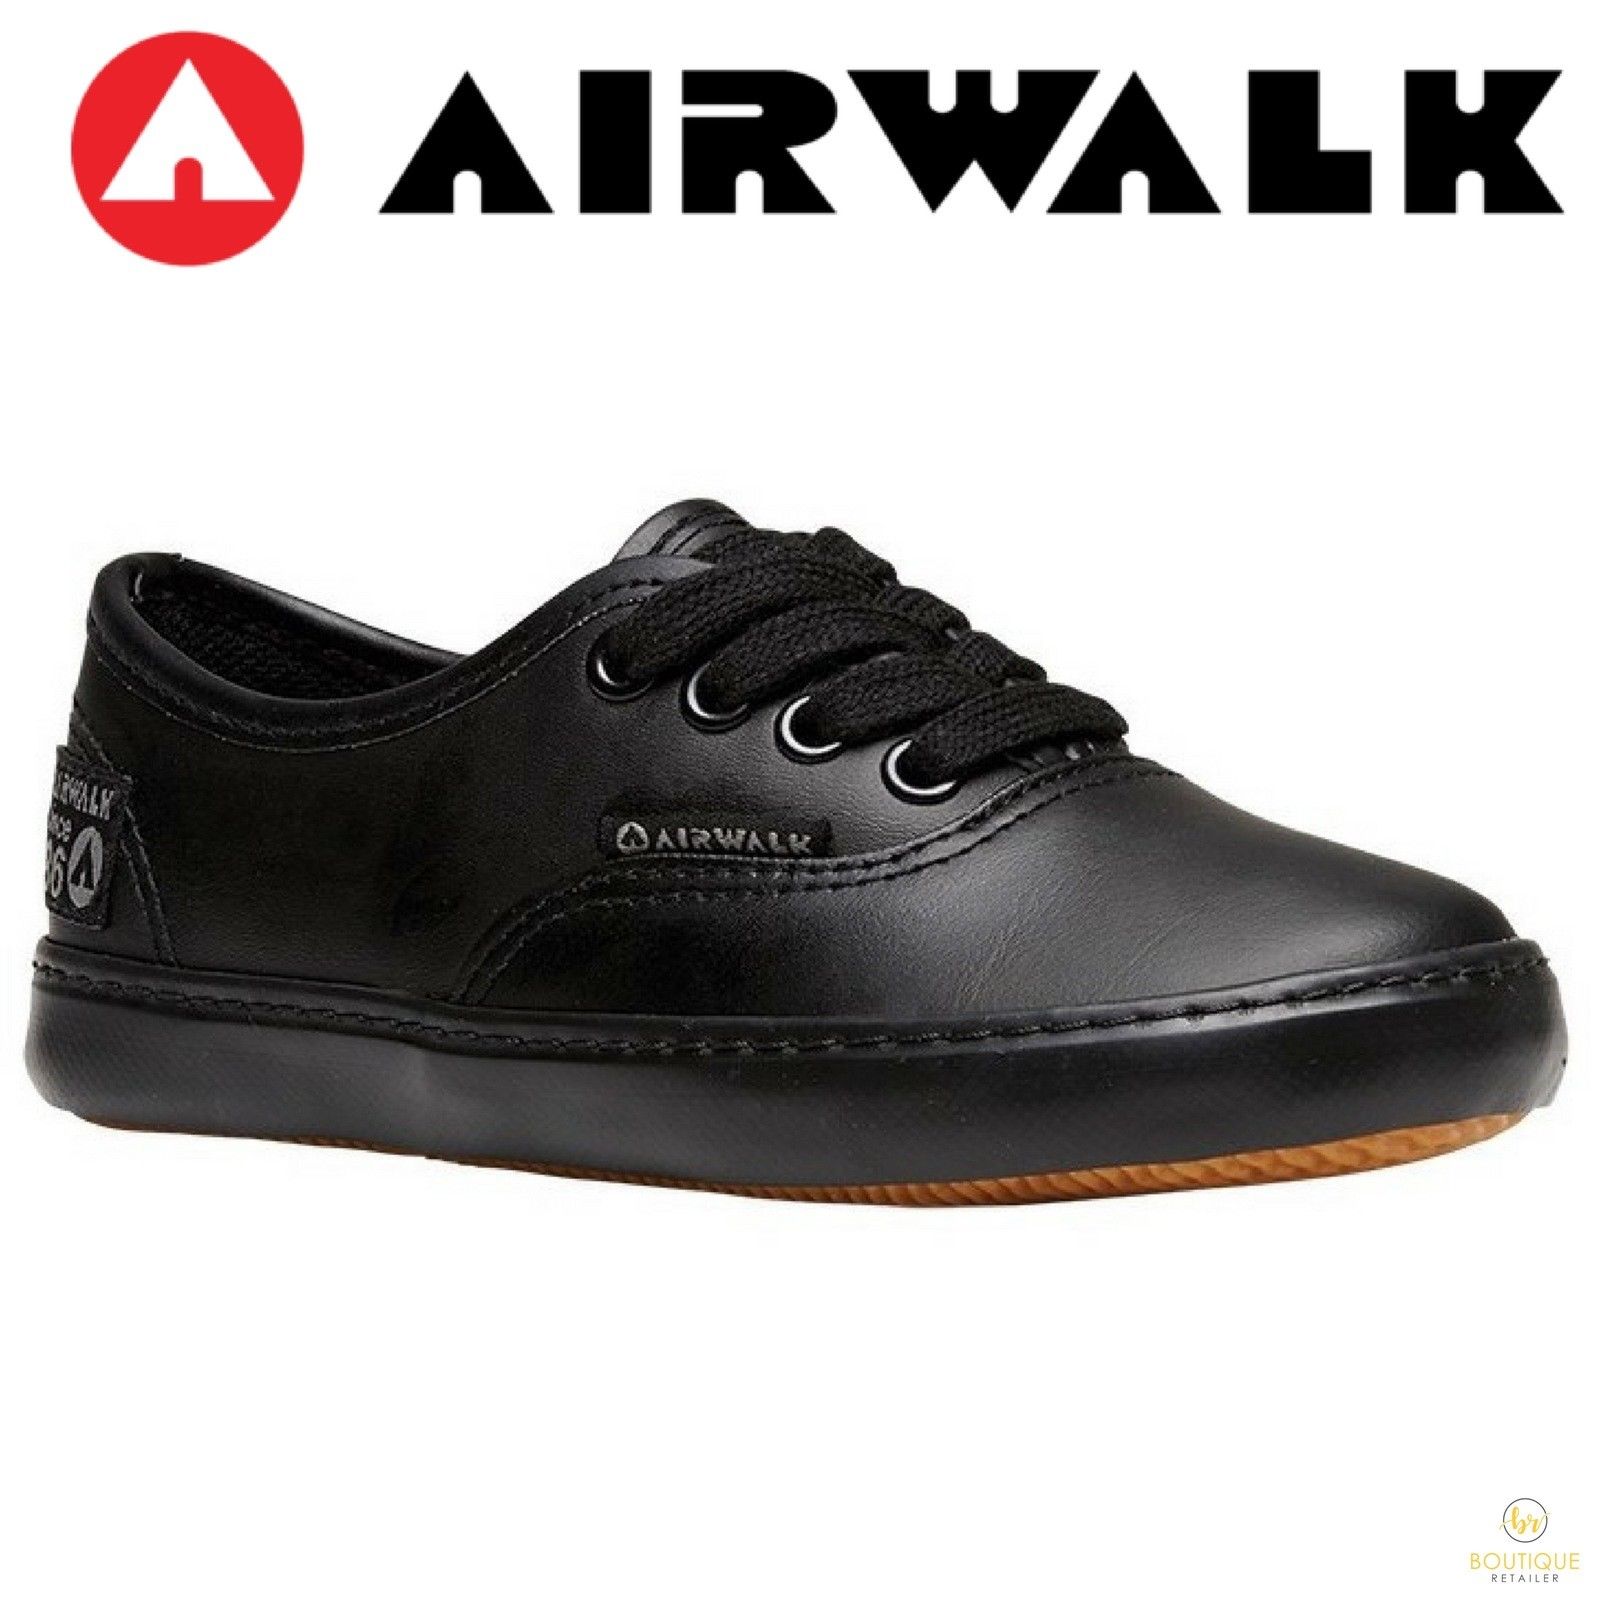 airwalk shoes australia